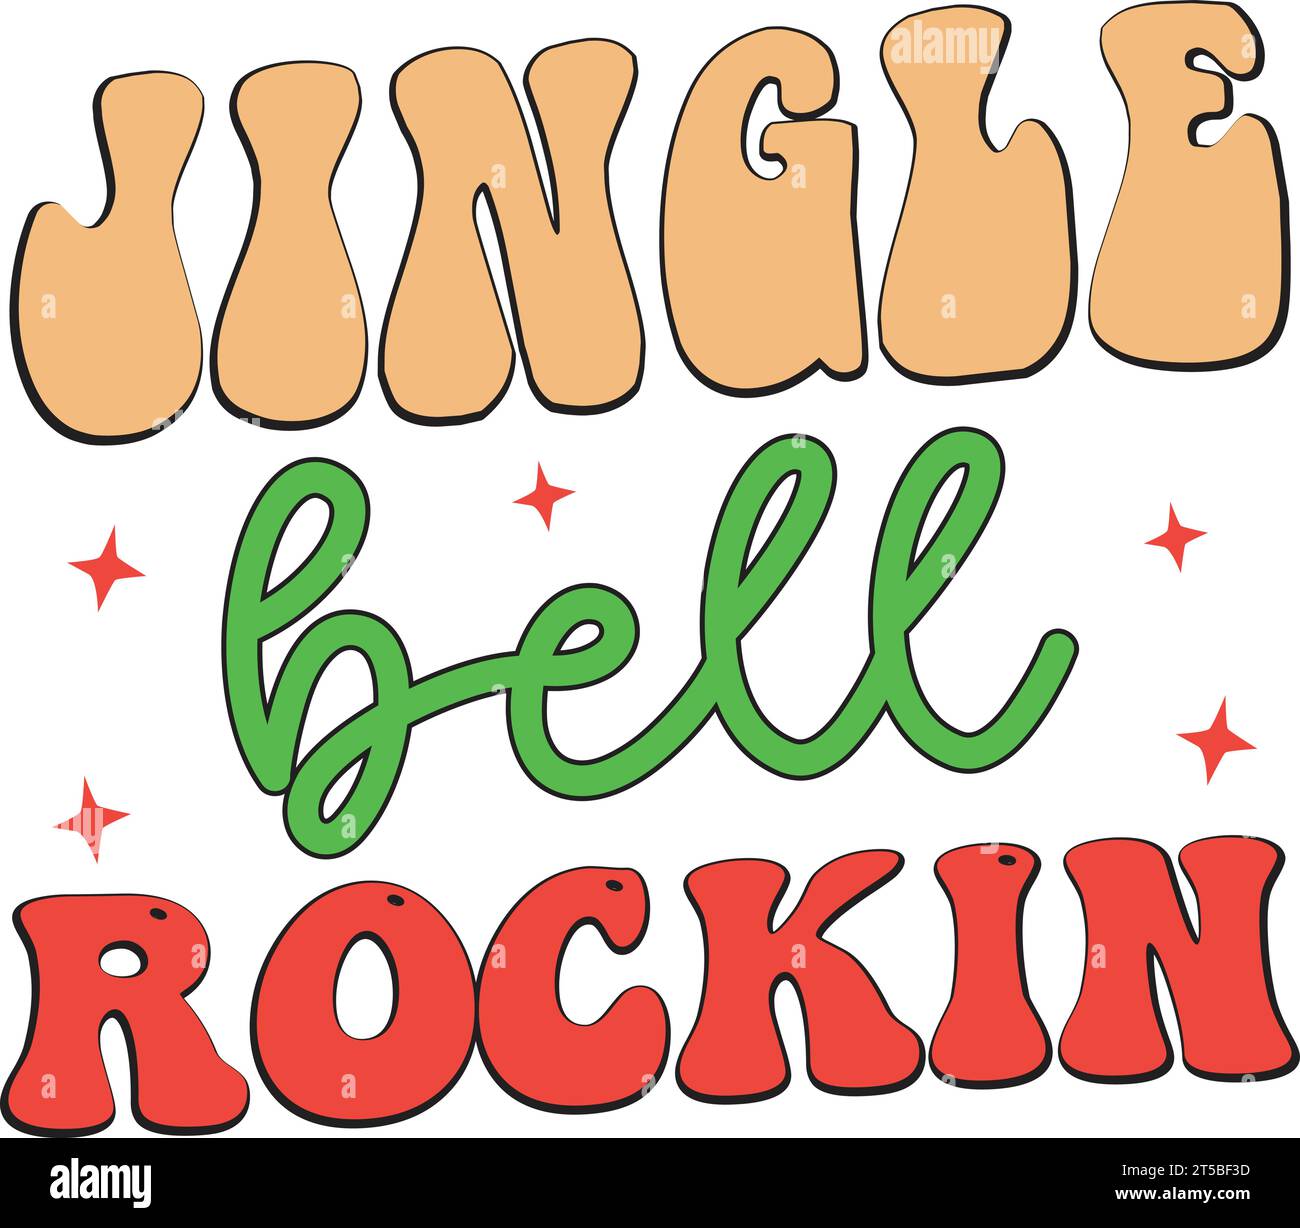 jingle bell rockin Illustrazione Vettoriale